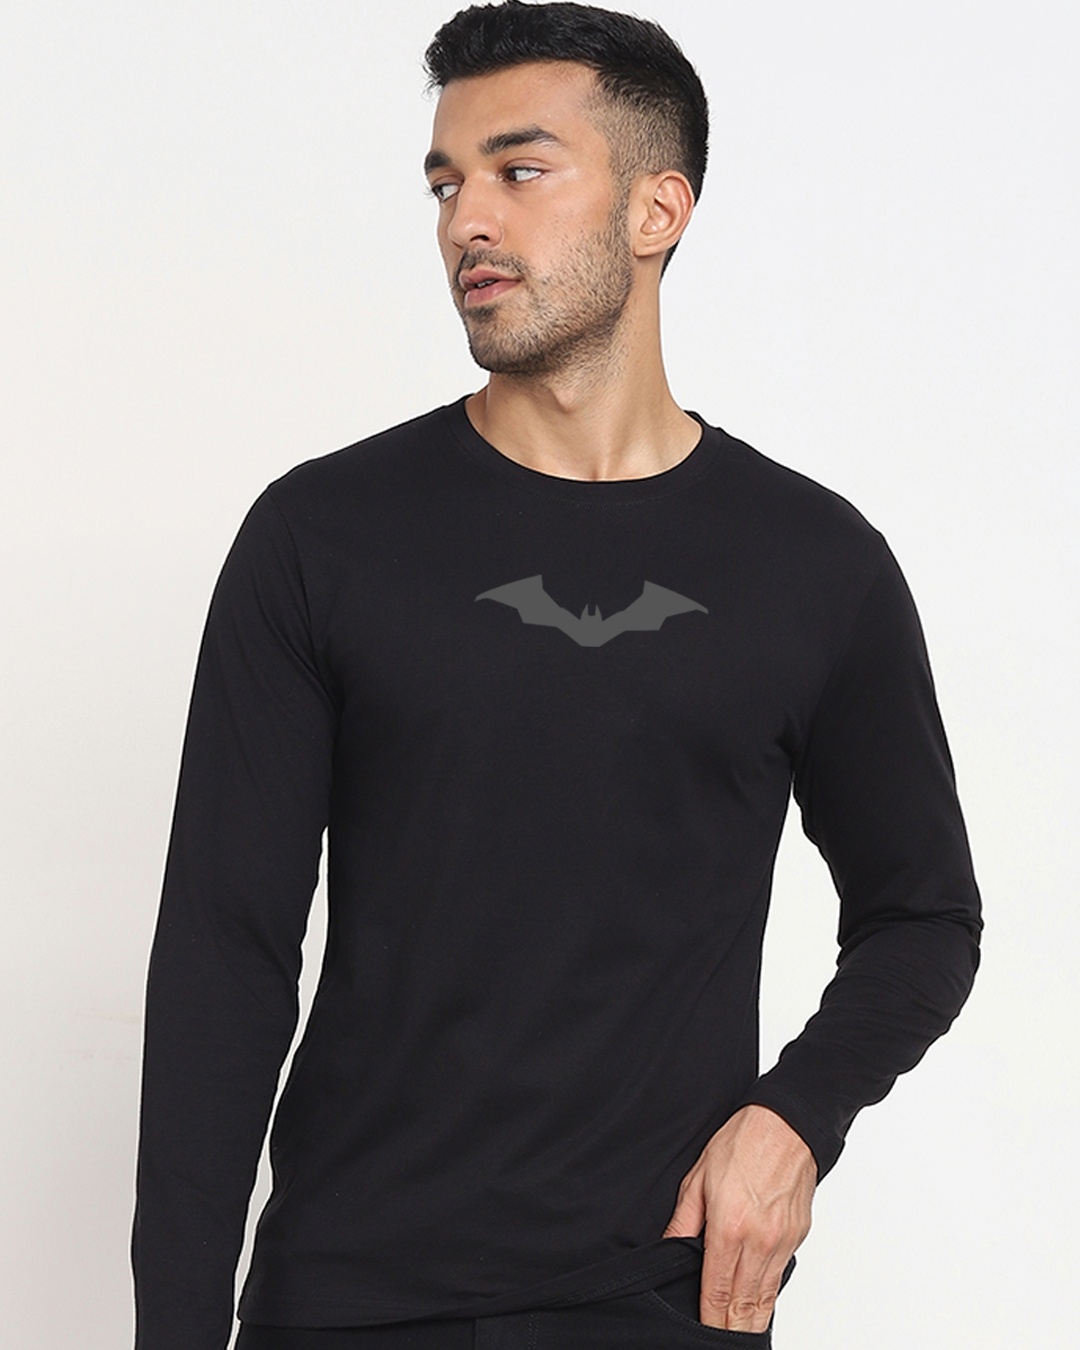 Buy Men's Black Batman Vengeance Placeholder Printed T-shirt for Men ...